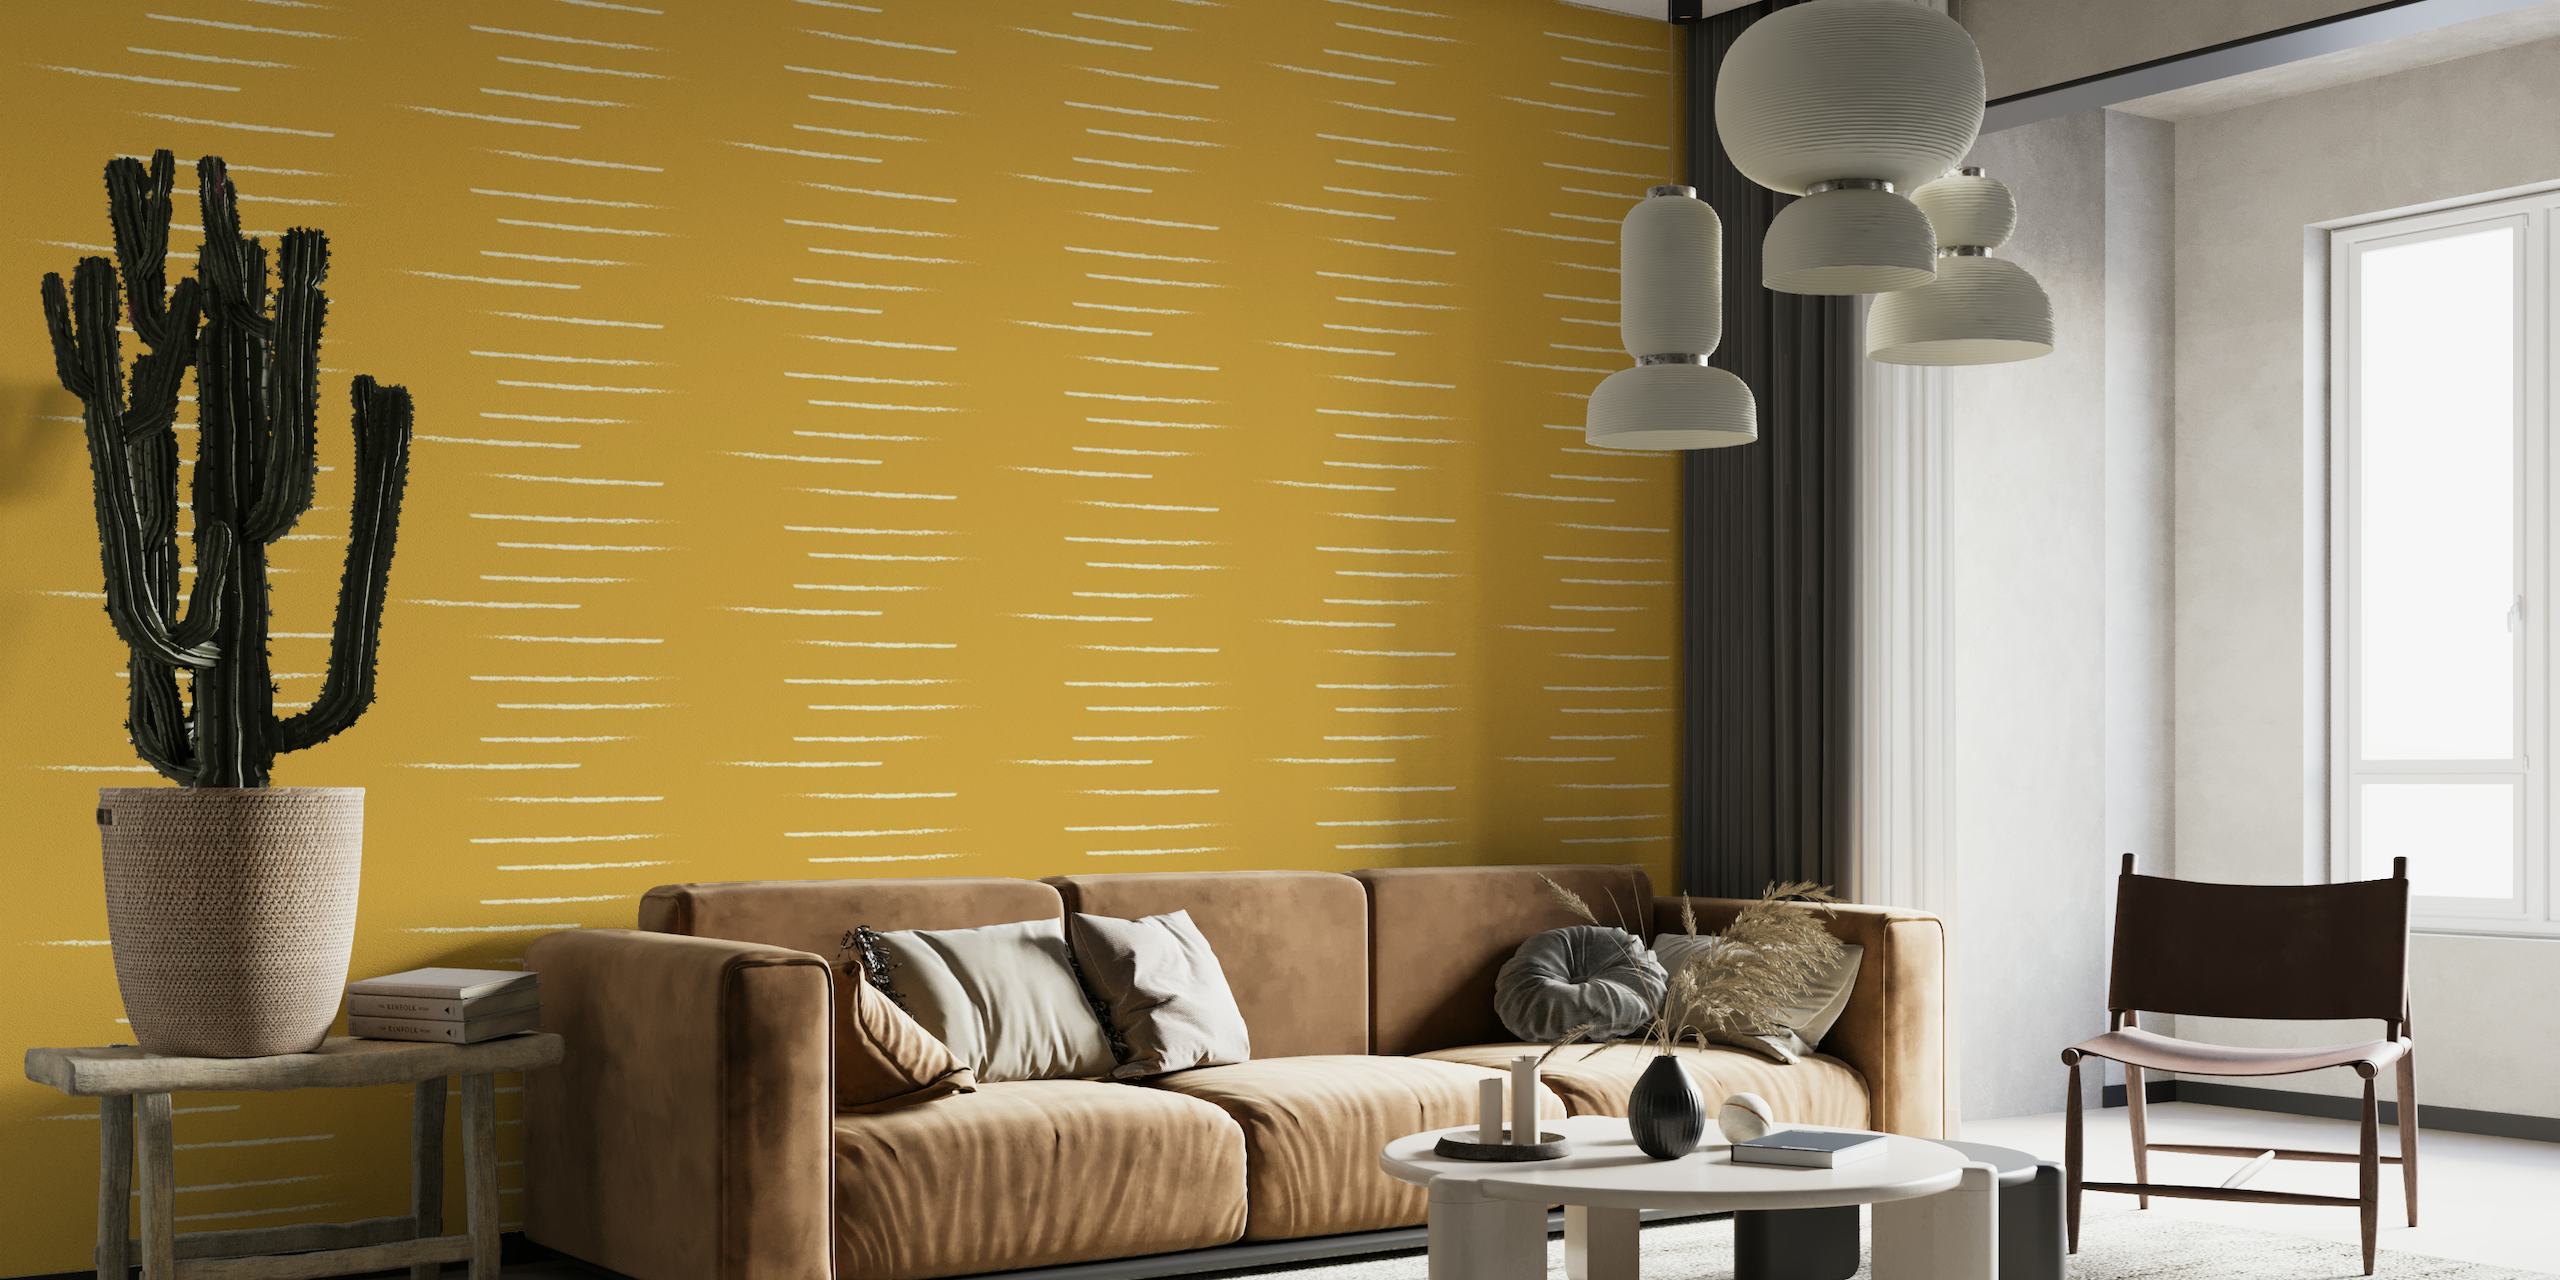 Horisontalt stripete veggmaleri i sennepsbeige toner som gjenspeiler en varm og minimalistisk stil